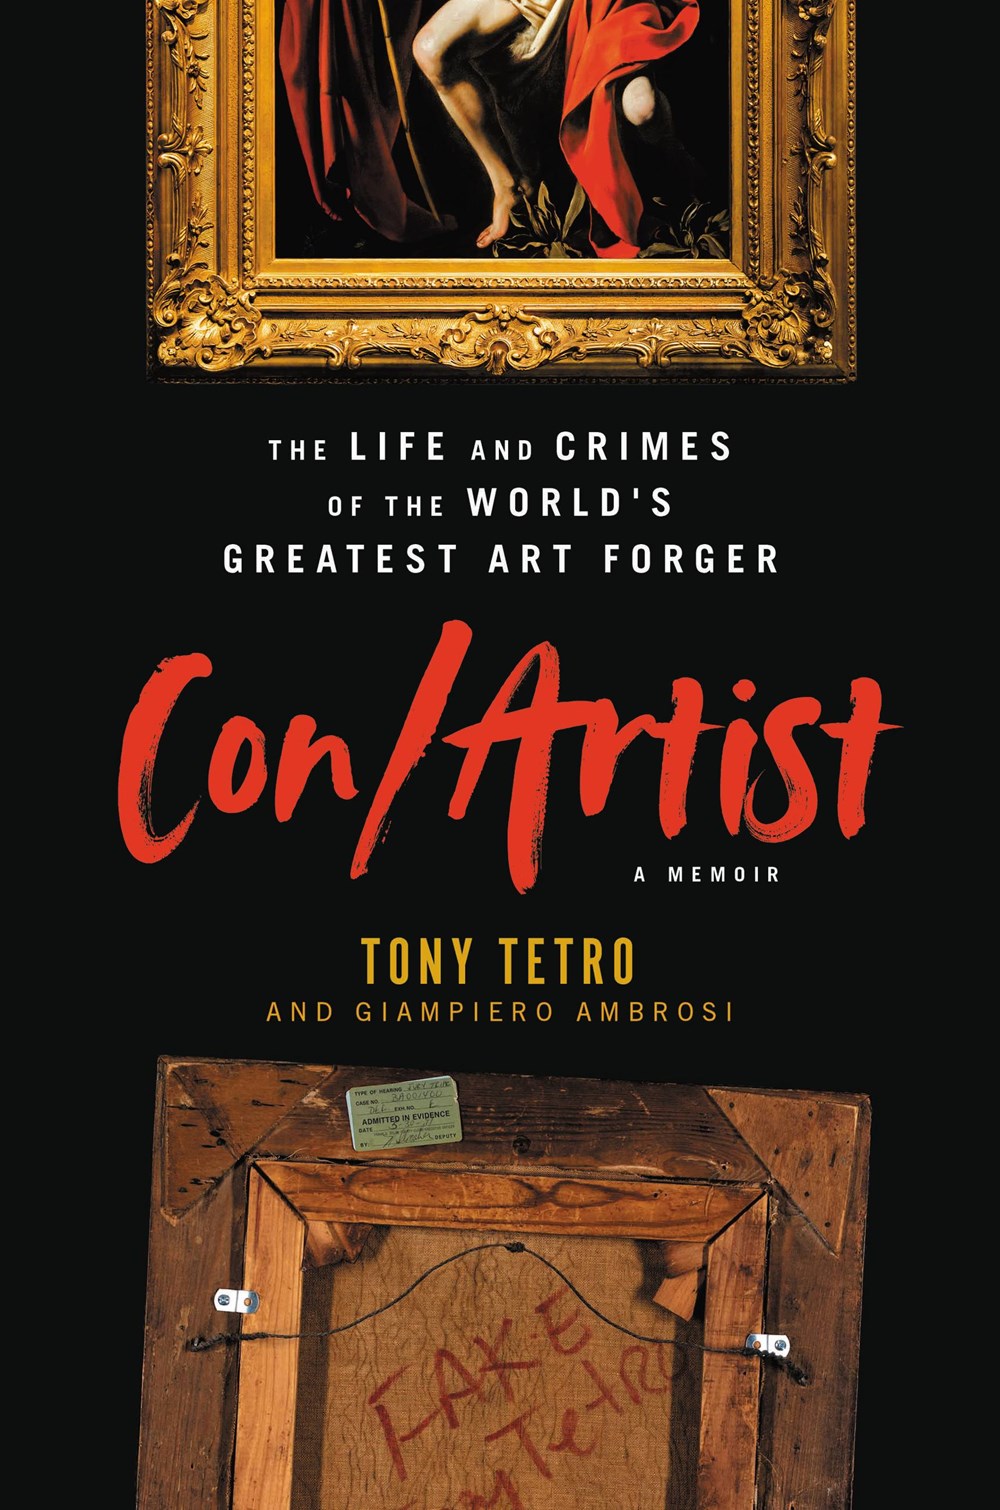 Con/Artist by Tony Tetro